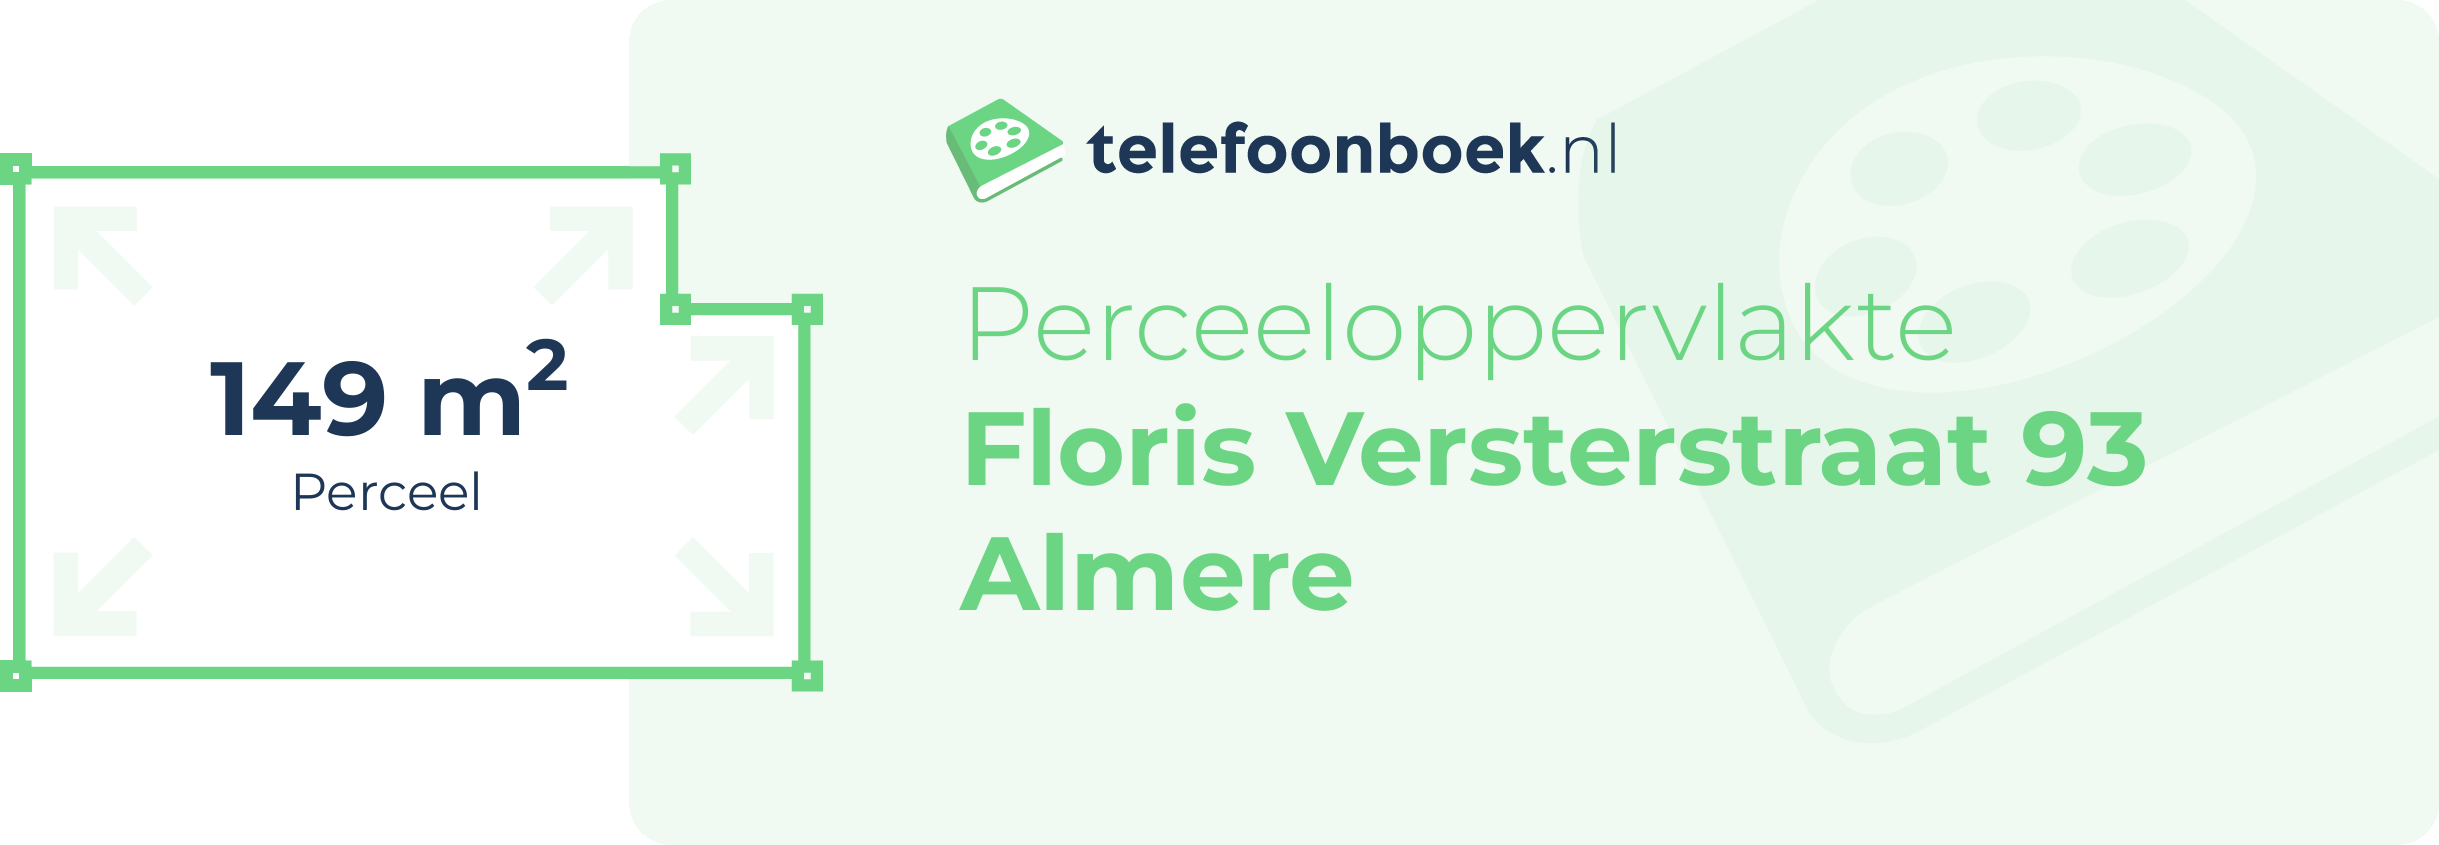 Perceeloppervlakte Floris Versterstraat 93 Almere